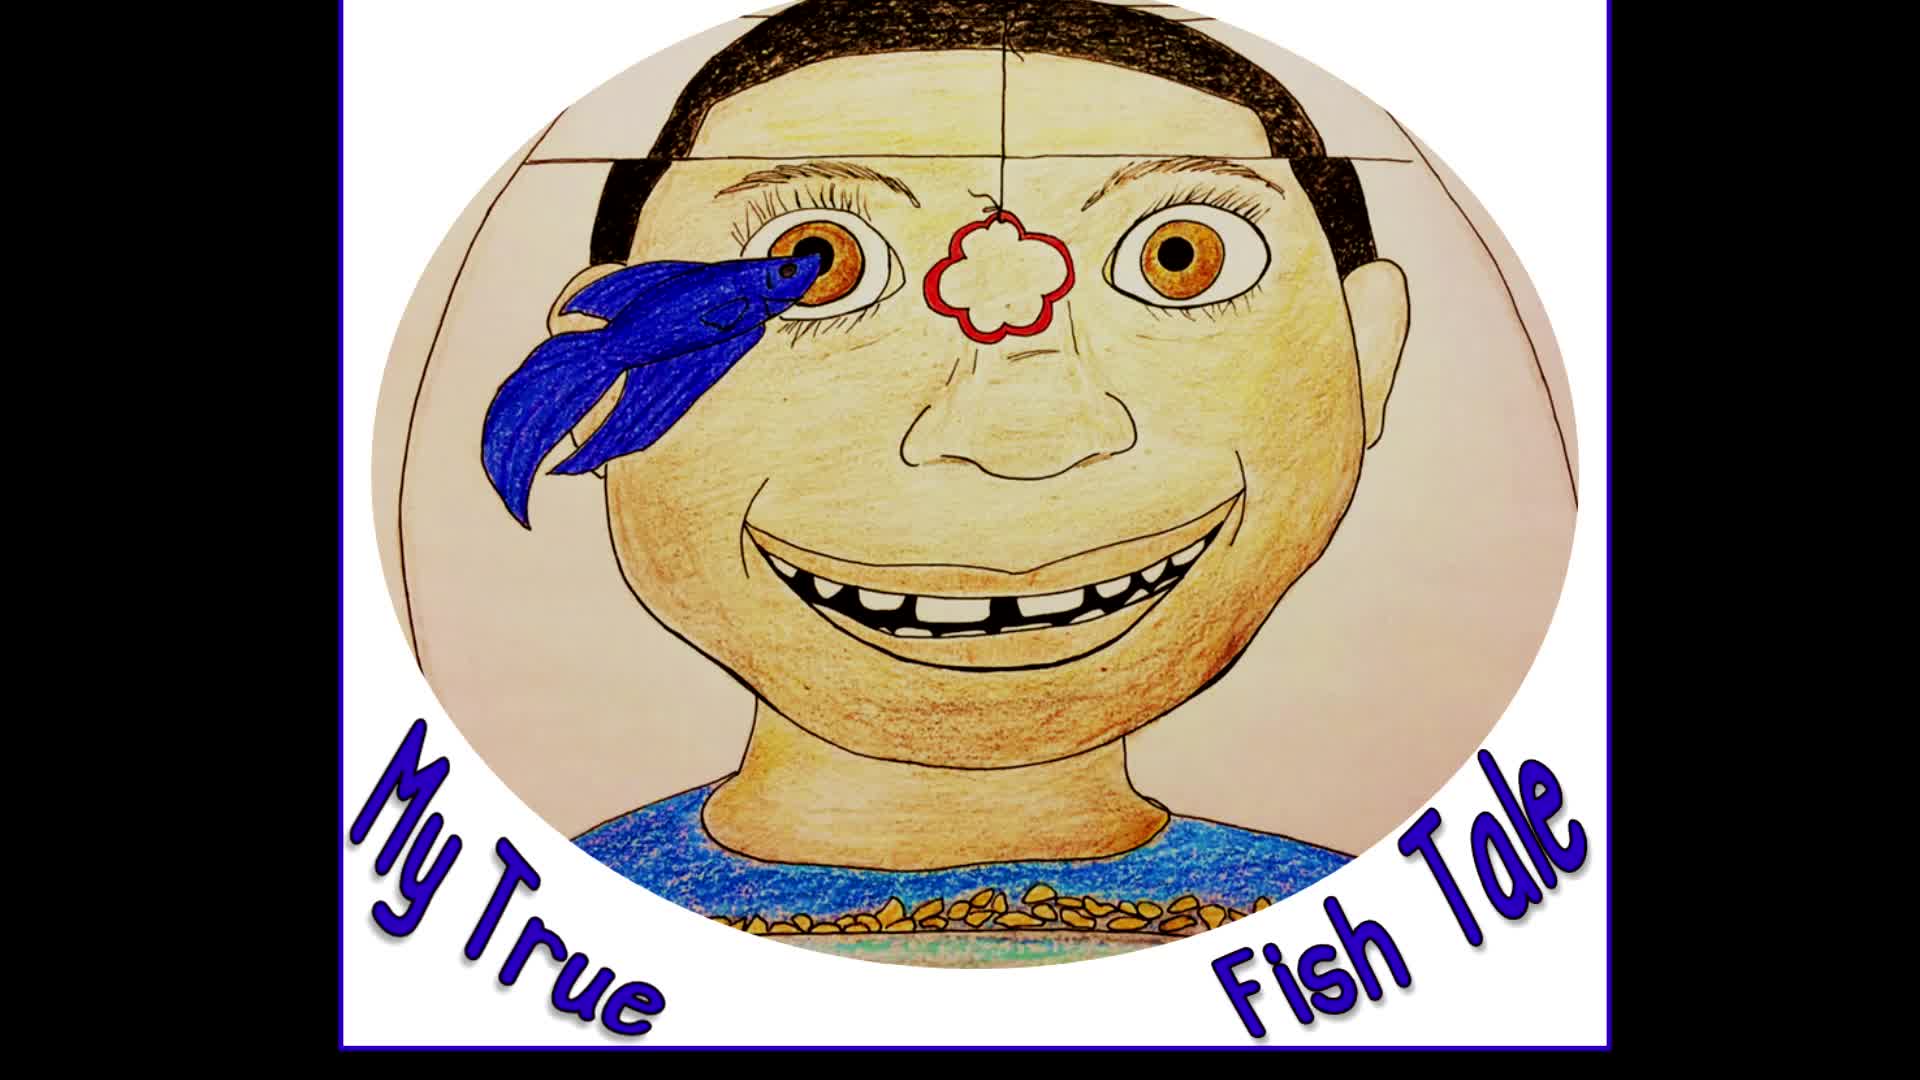 "My True Fish Tale"